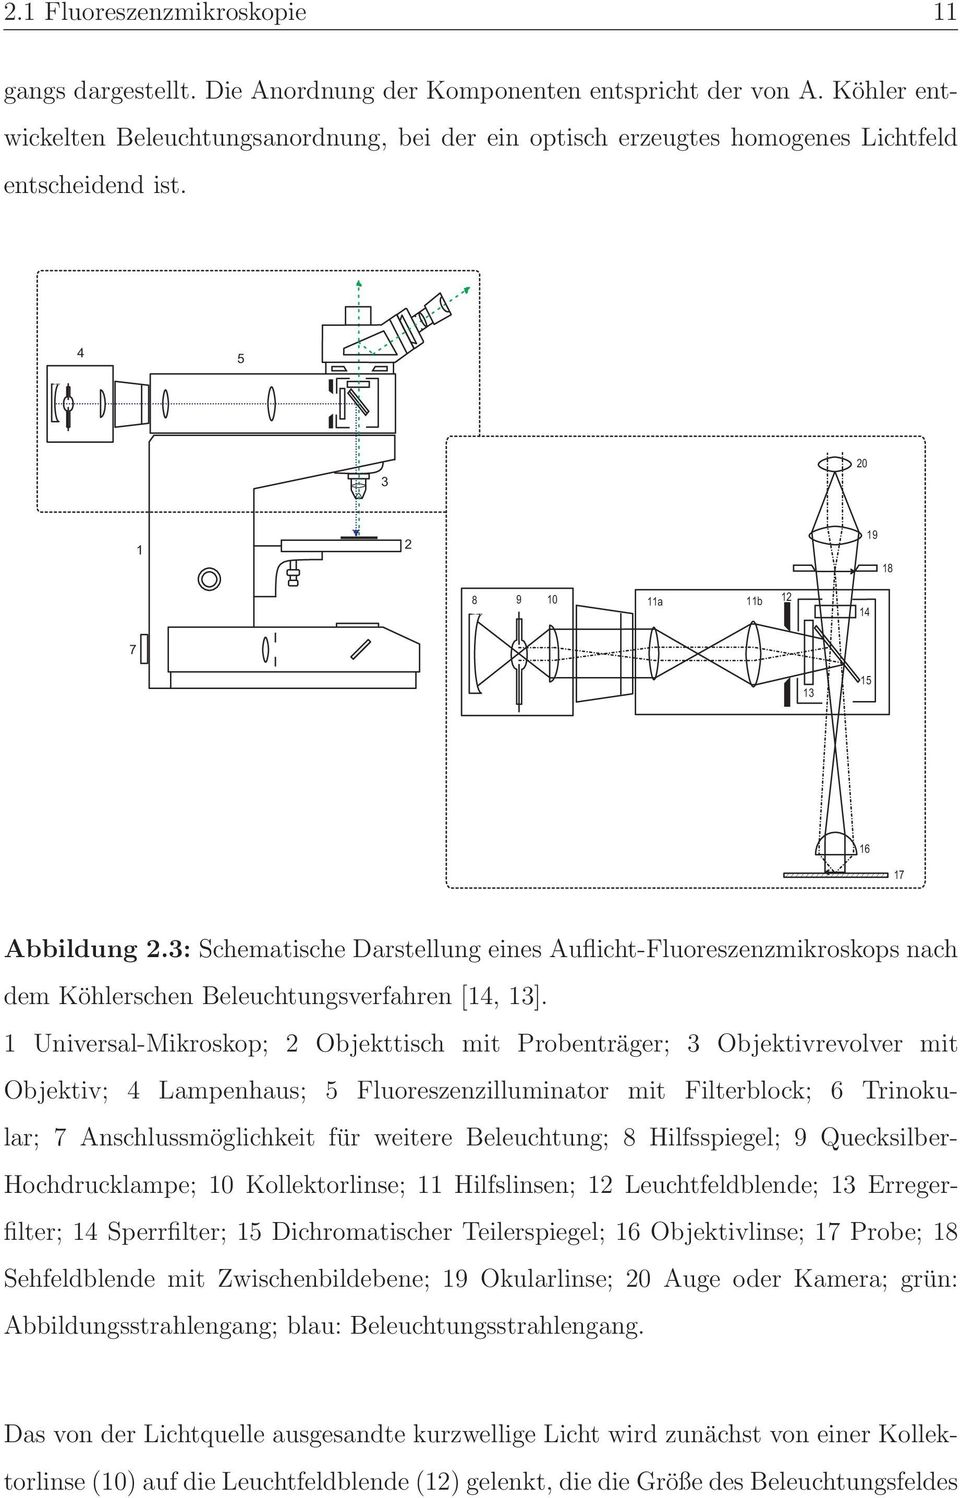 3: Schematische Darstellung eines Auflicht-Fluoreszenzmikroskops nach dem Köhlerschen Beleuchtungsverfahren [14, 13].